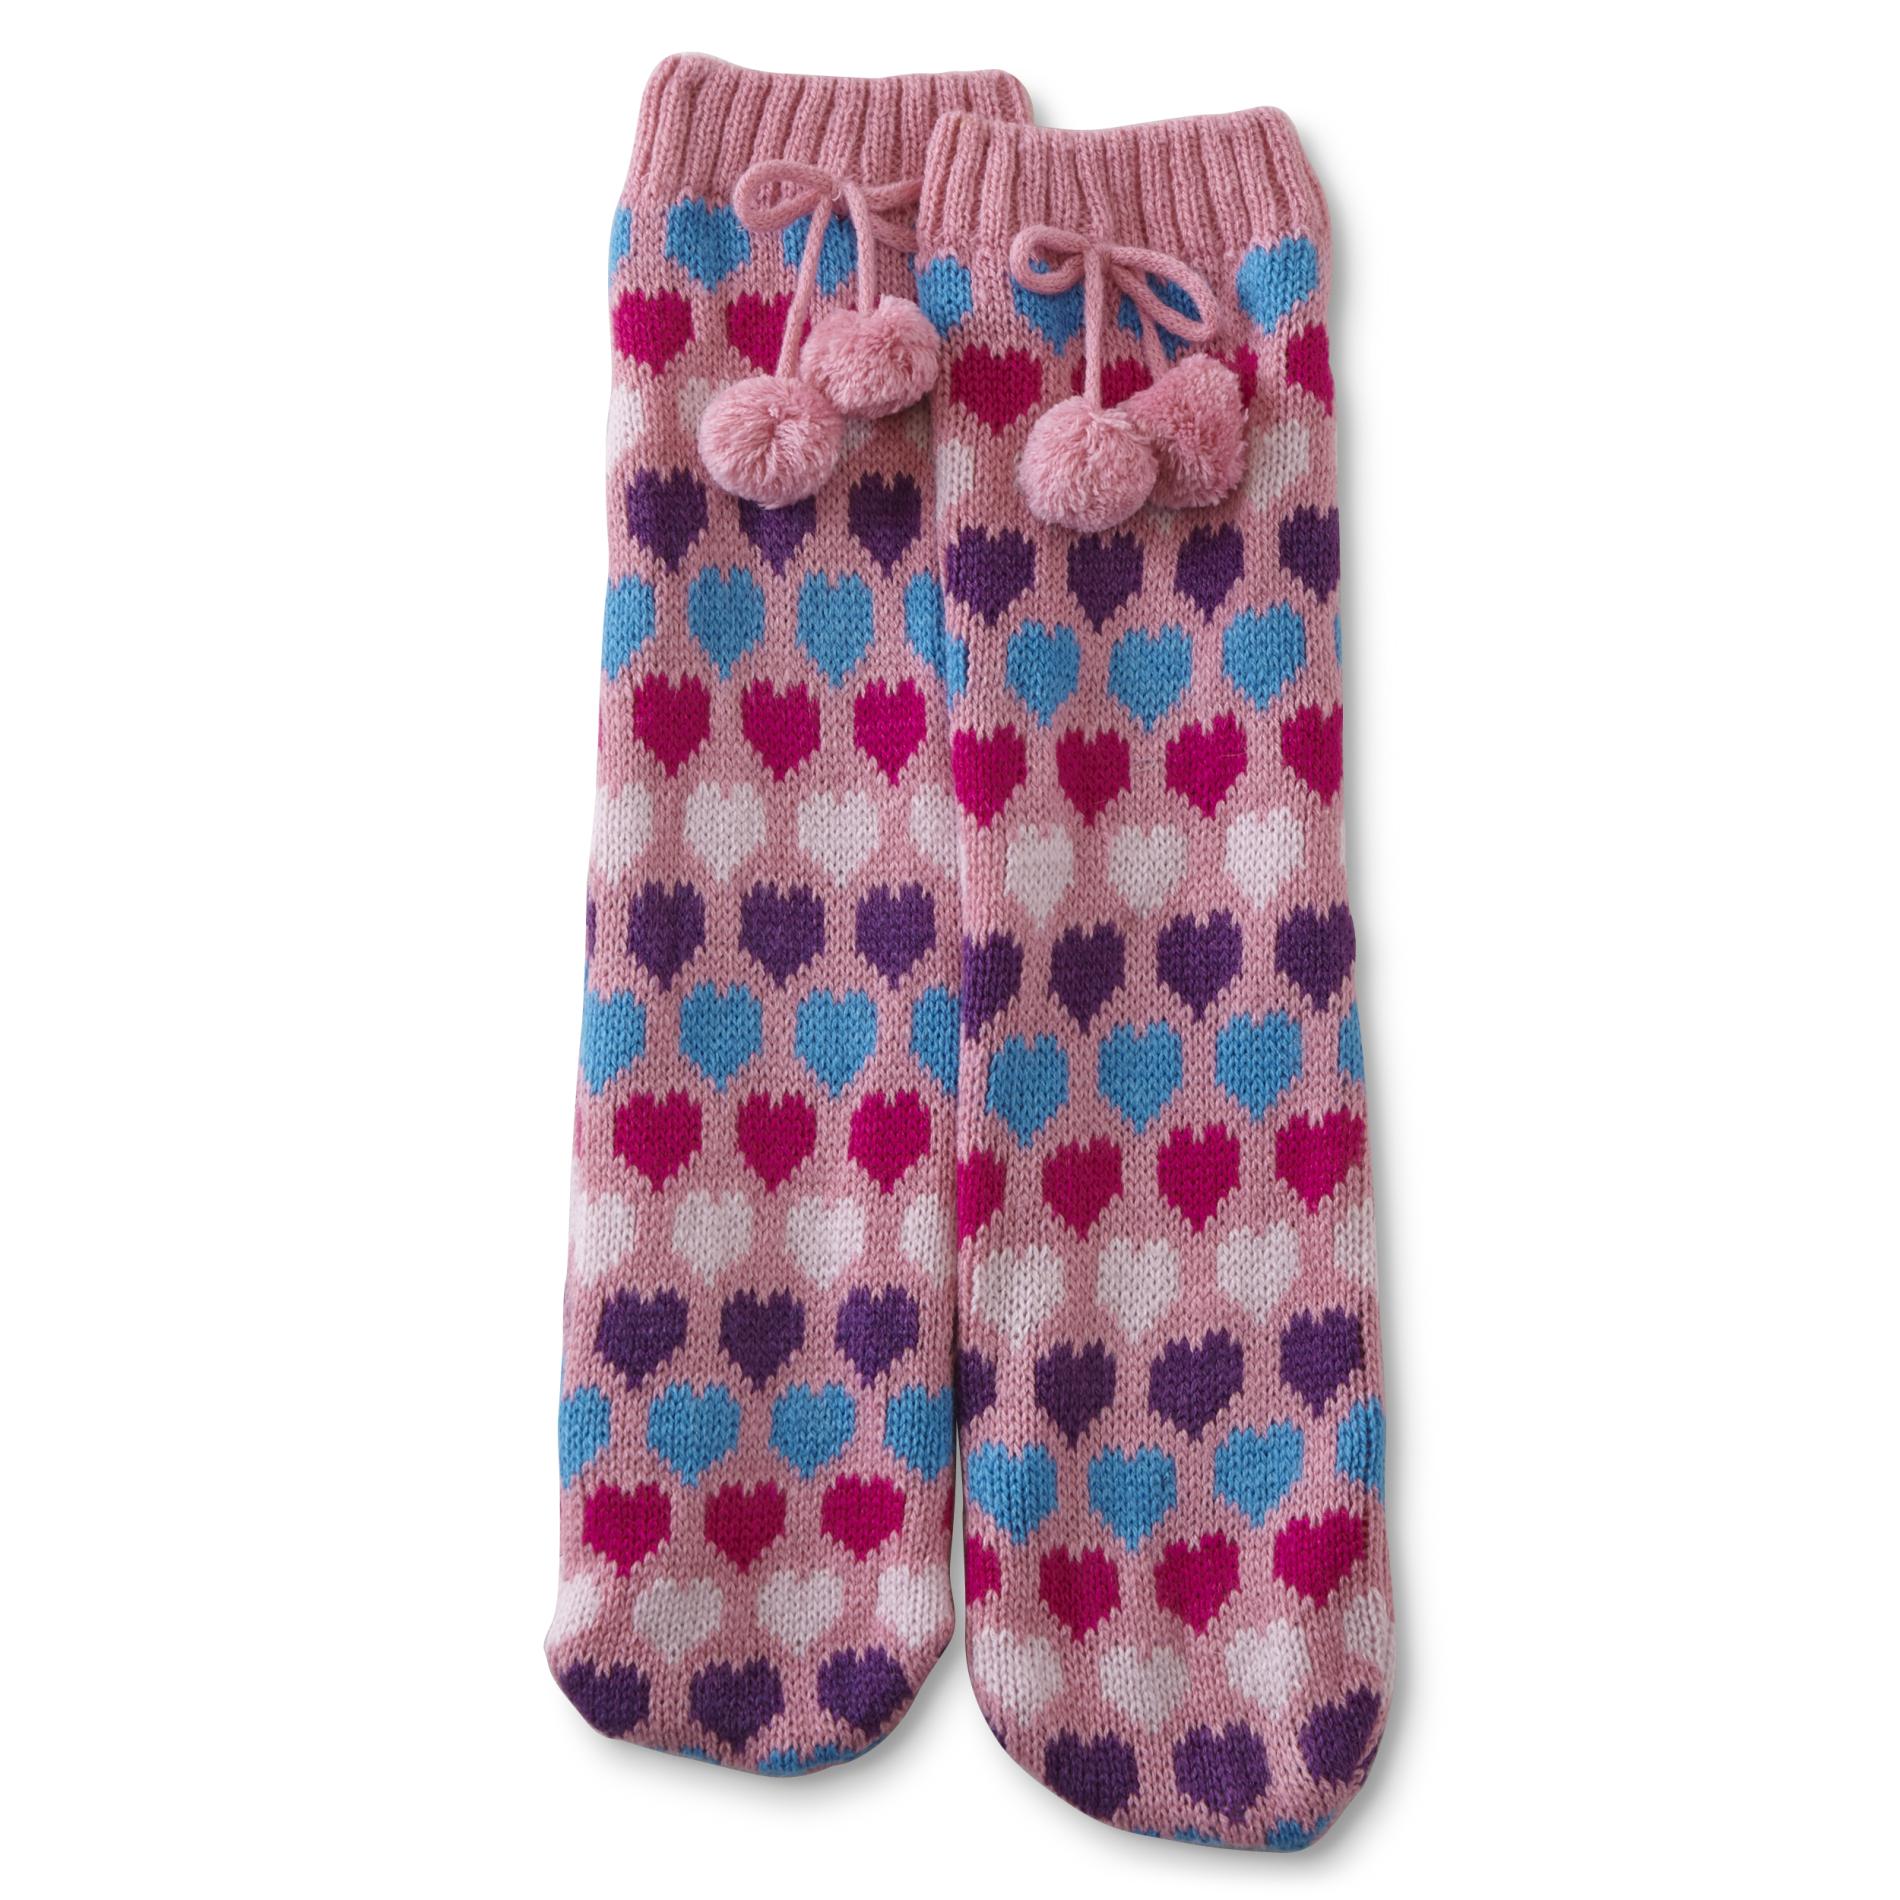 Joe Boxer Girls' Slipper Socks - Hearts